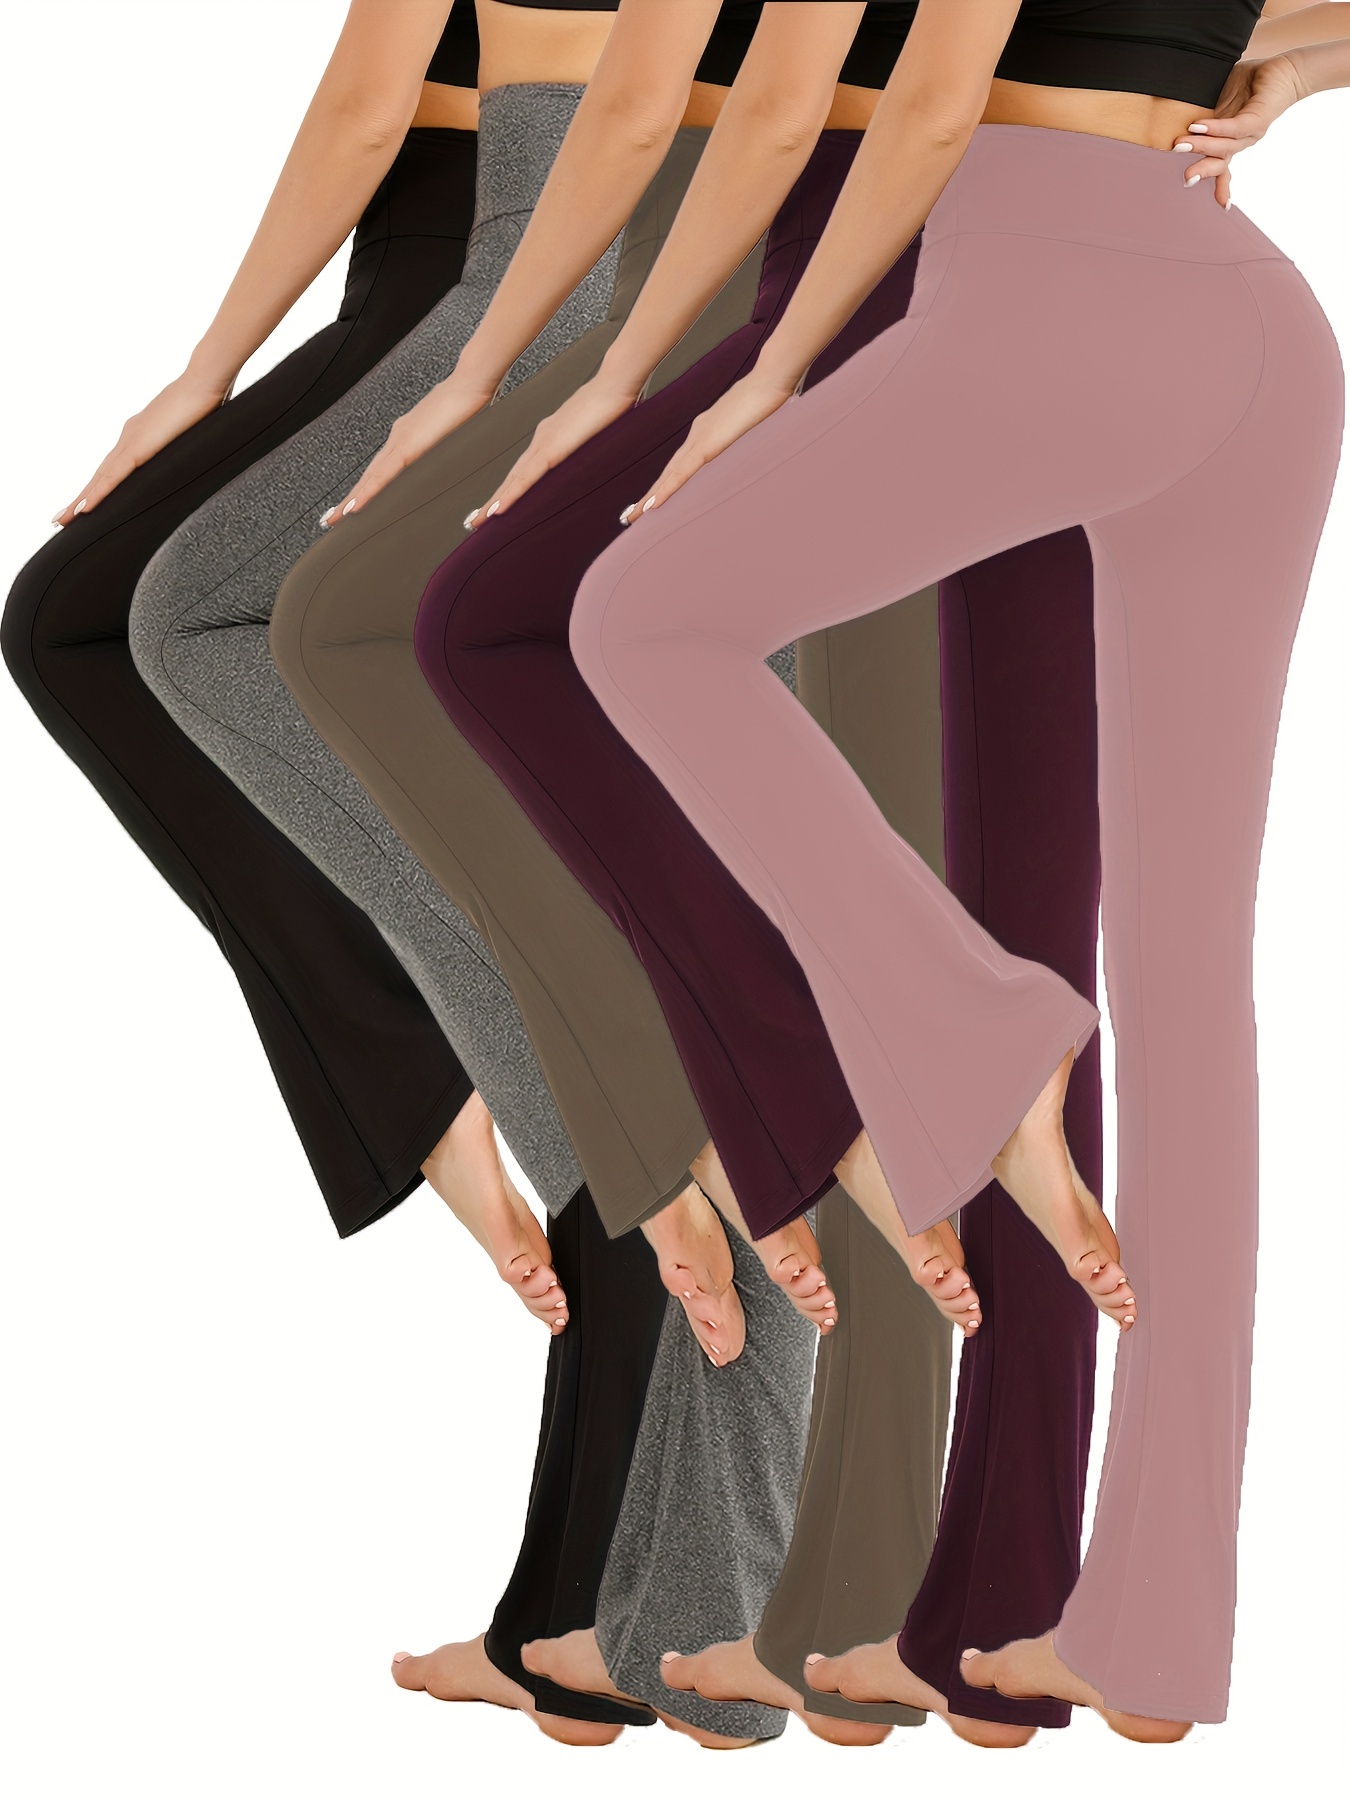 Women Bootcut Yoga Pants High Waist Bootleg Flare Pants Running